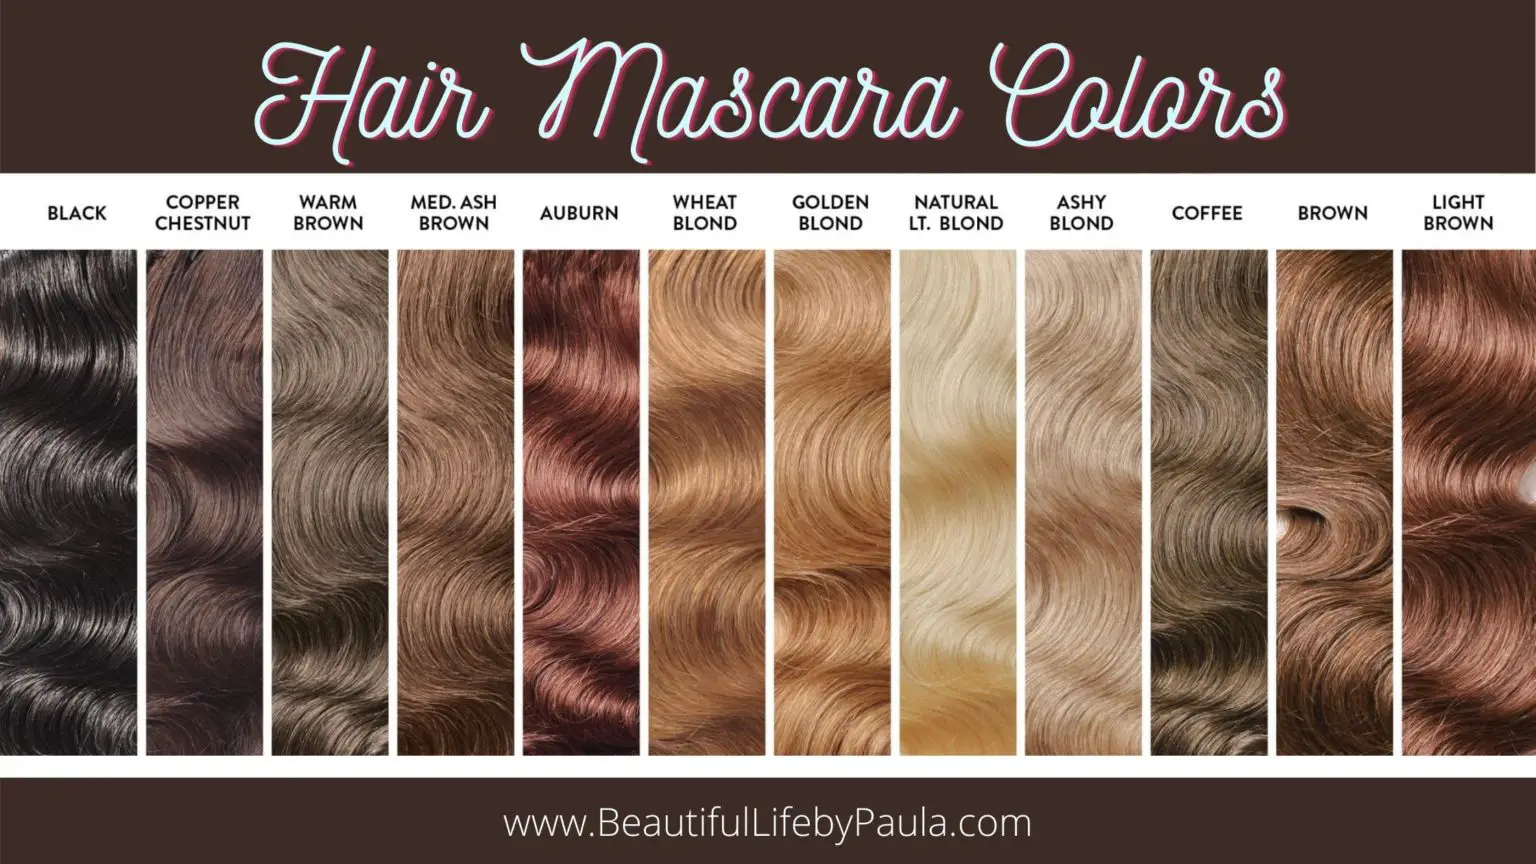 3. Revlon ColorSilk Beautiful Color Hair Color - wide 4